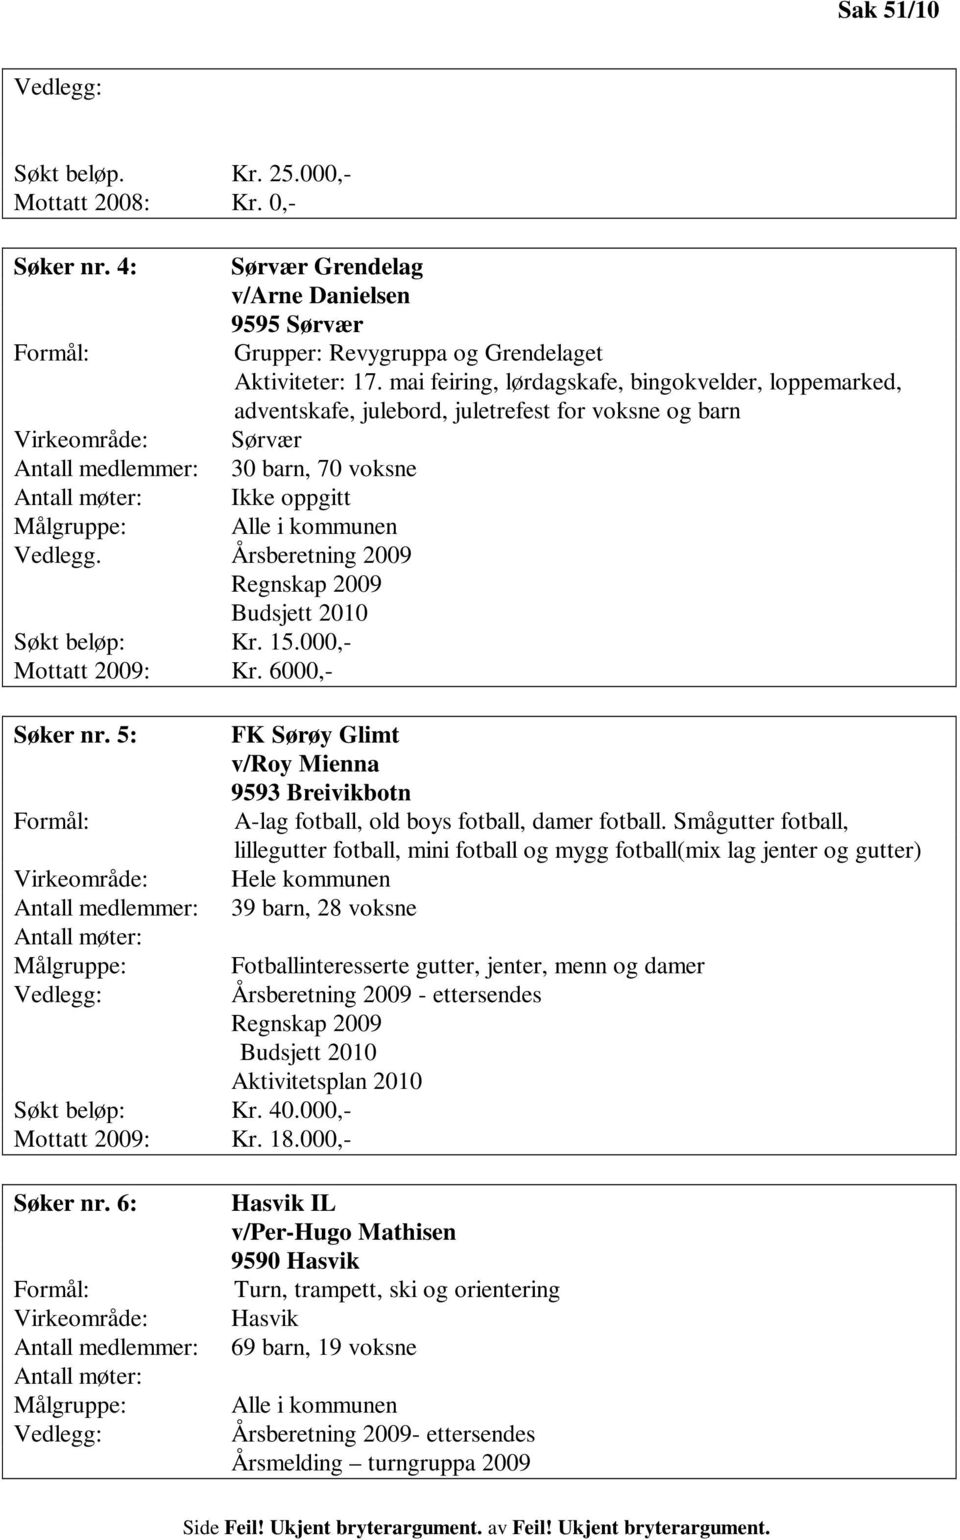 Målgruppe: Alle i kommunen Vedlegg. Årsberetning 2009 Regnskap 2009 Budsjett 2010 Søkt beløp: Kr. 15.000,- Mottatt 2009: Kr. 6000,- Søker nr.